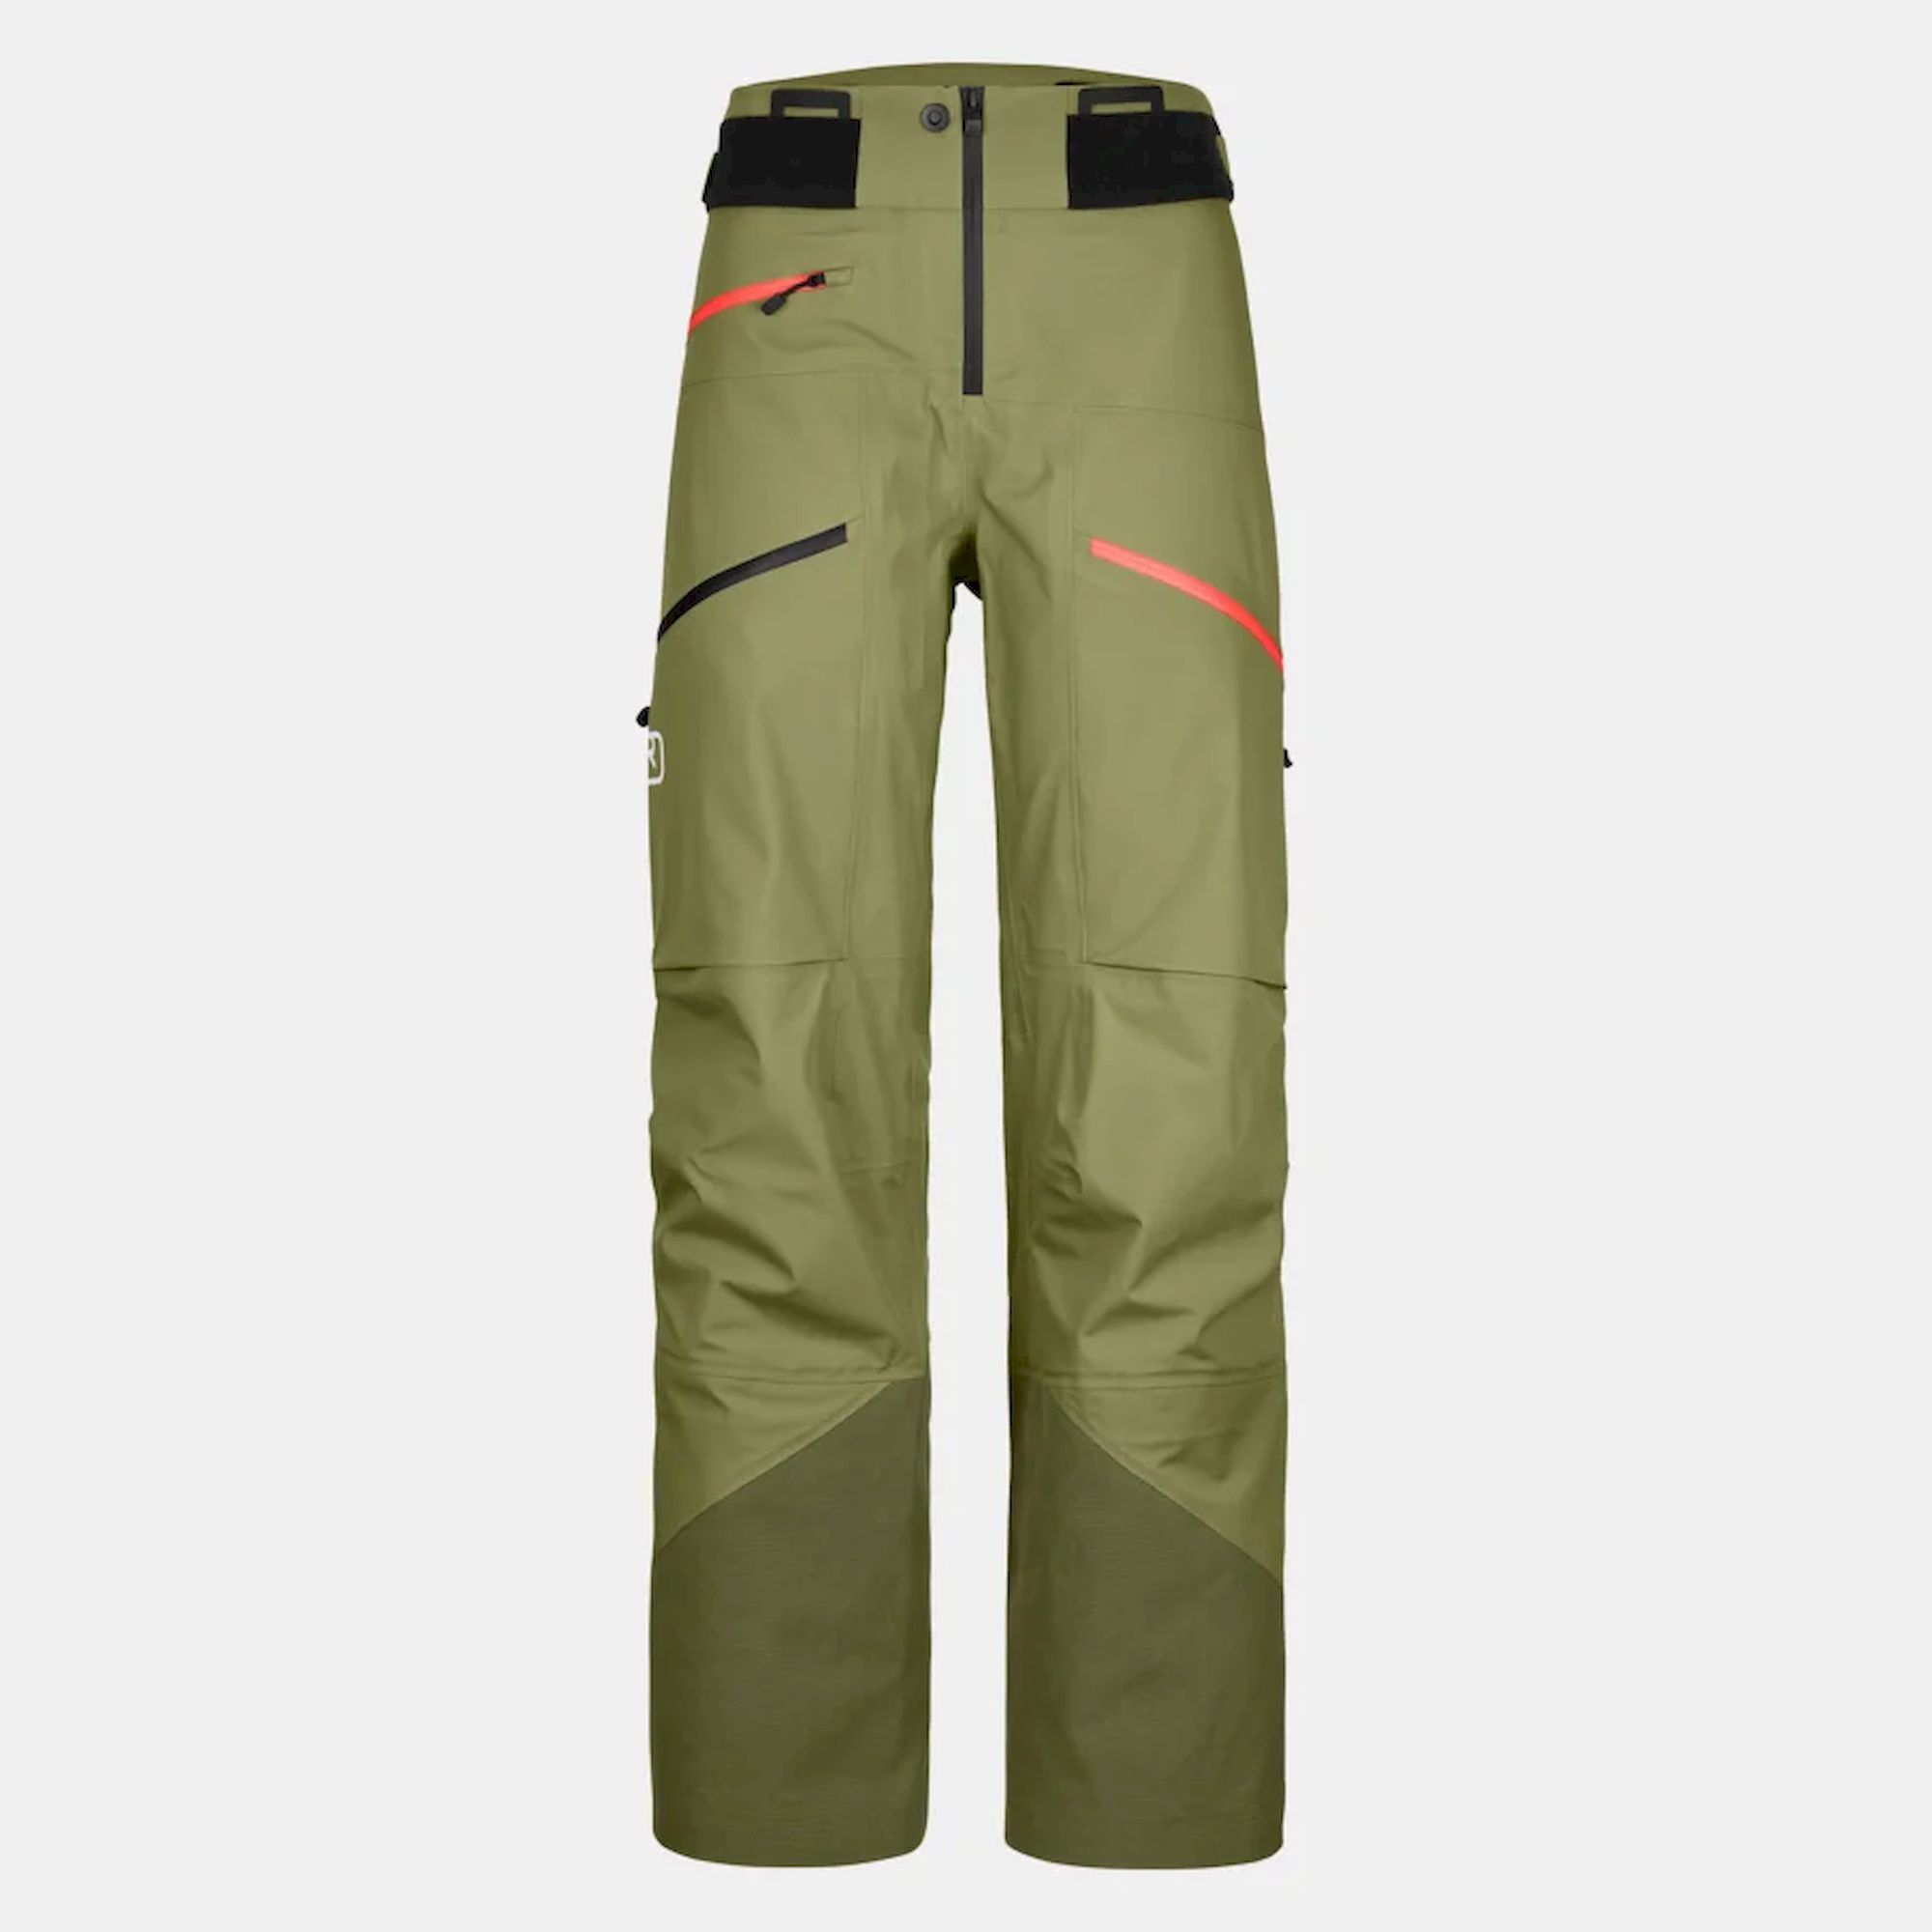 Ortovox 3L Deep Shell Pants - Ski pants - Women's